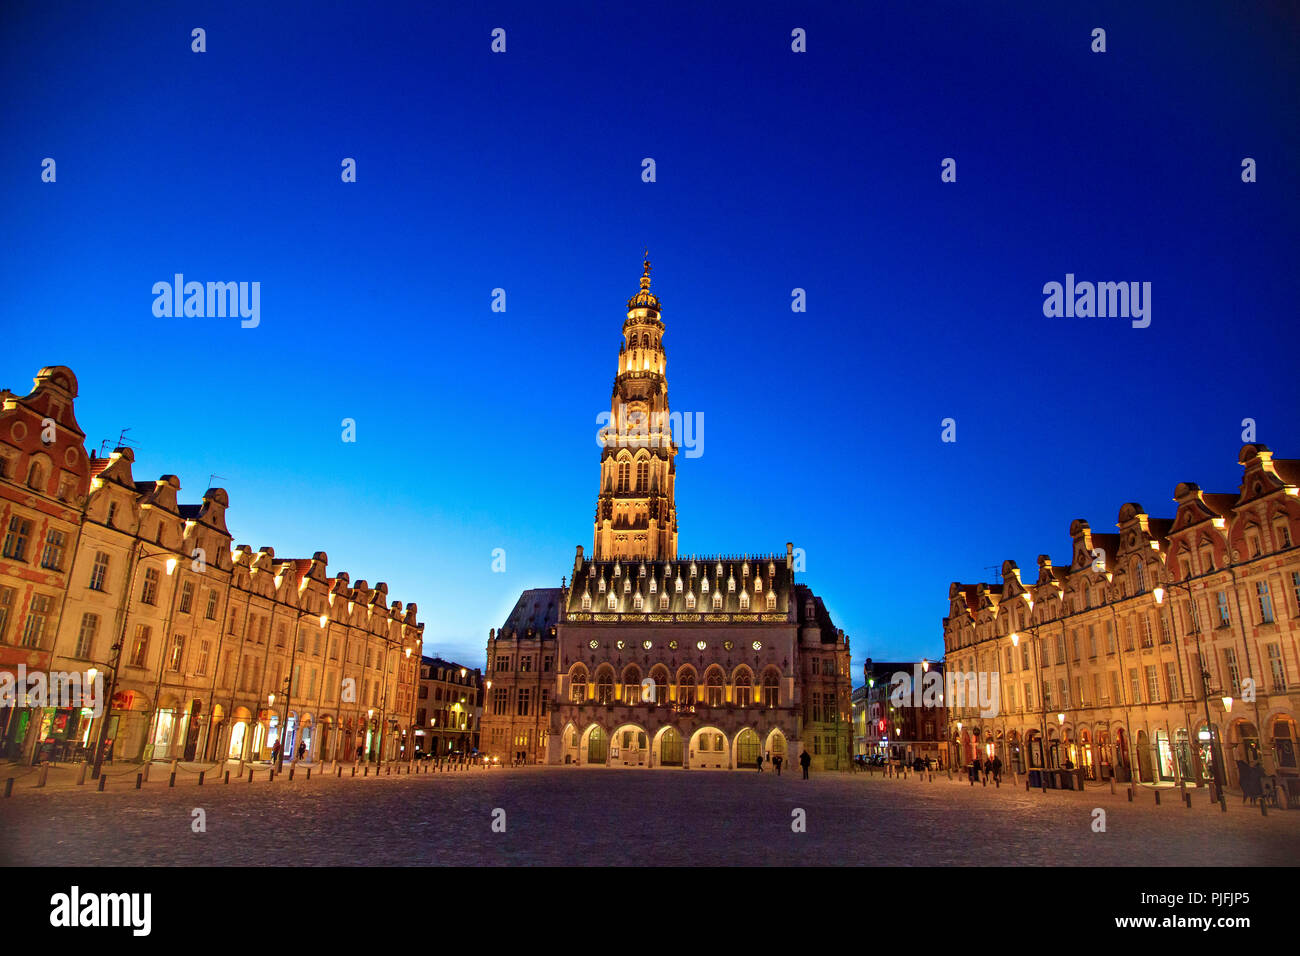 Arras (Nordfrankreich): Rathaus und traditionellen flämischen Architektur der Gebäude in der "Place des Heros" (Heldenplatz), nachts. Der Glockenturm o Stockfoto